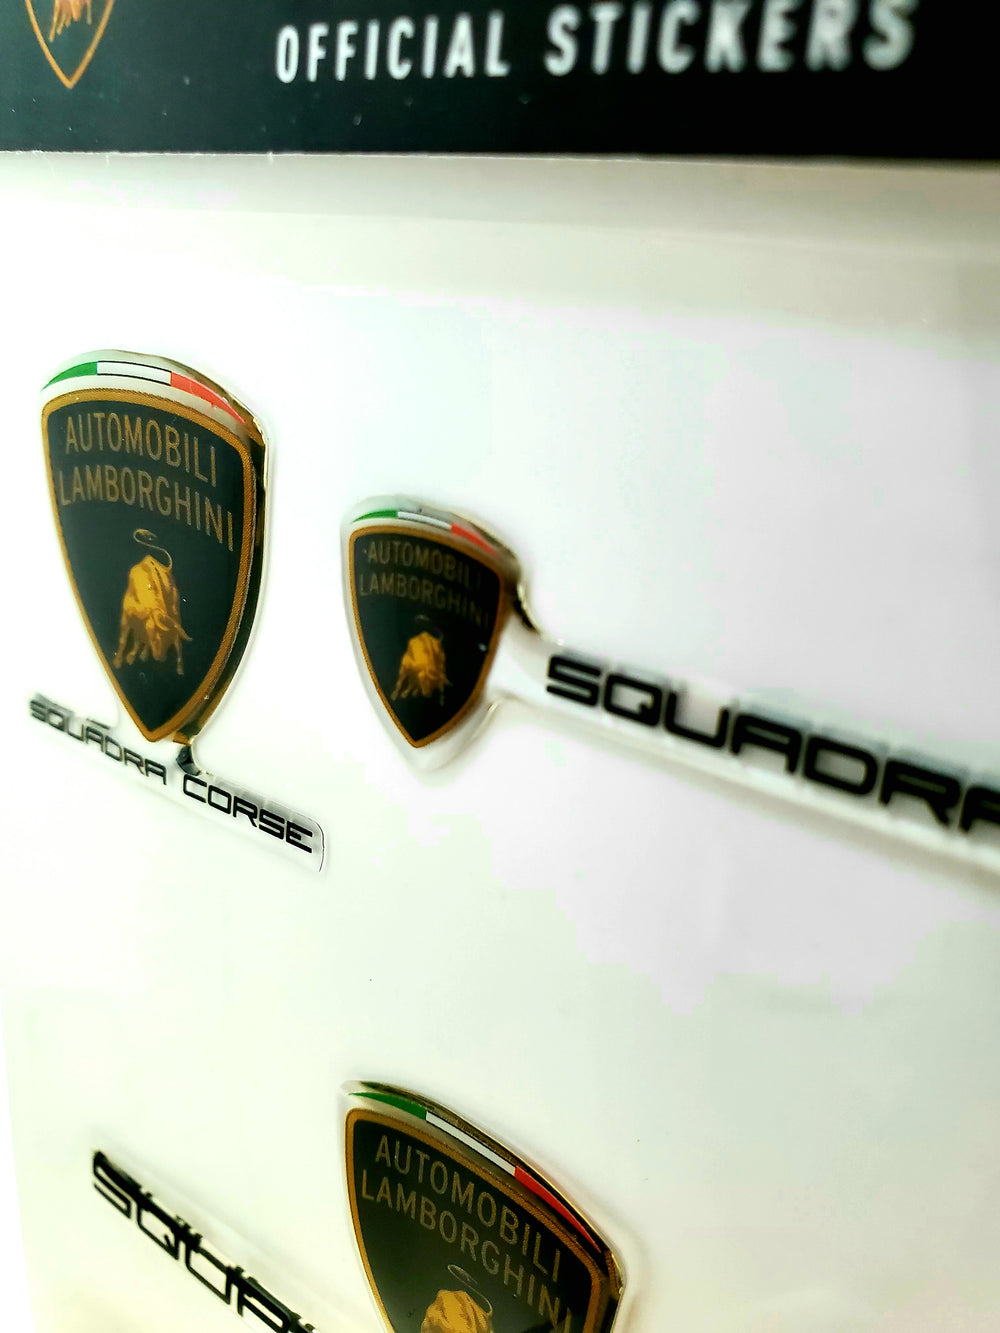 Official Lamborghini Squadra Corse Official Sticker Pack